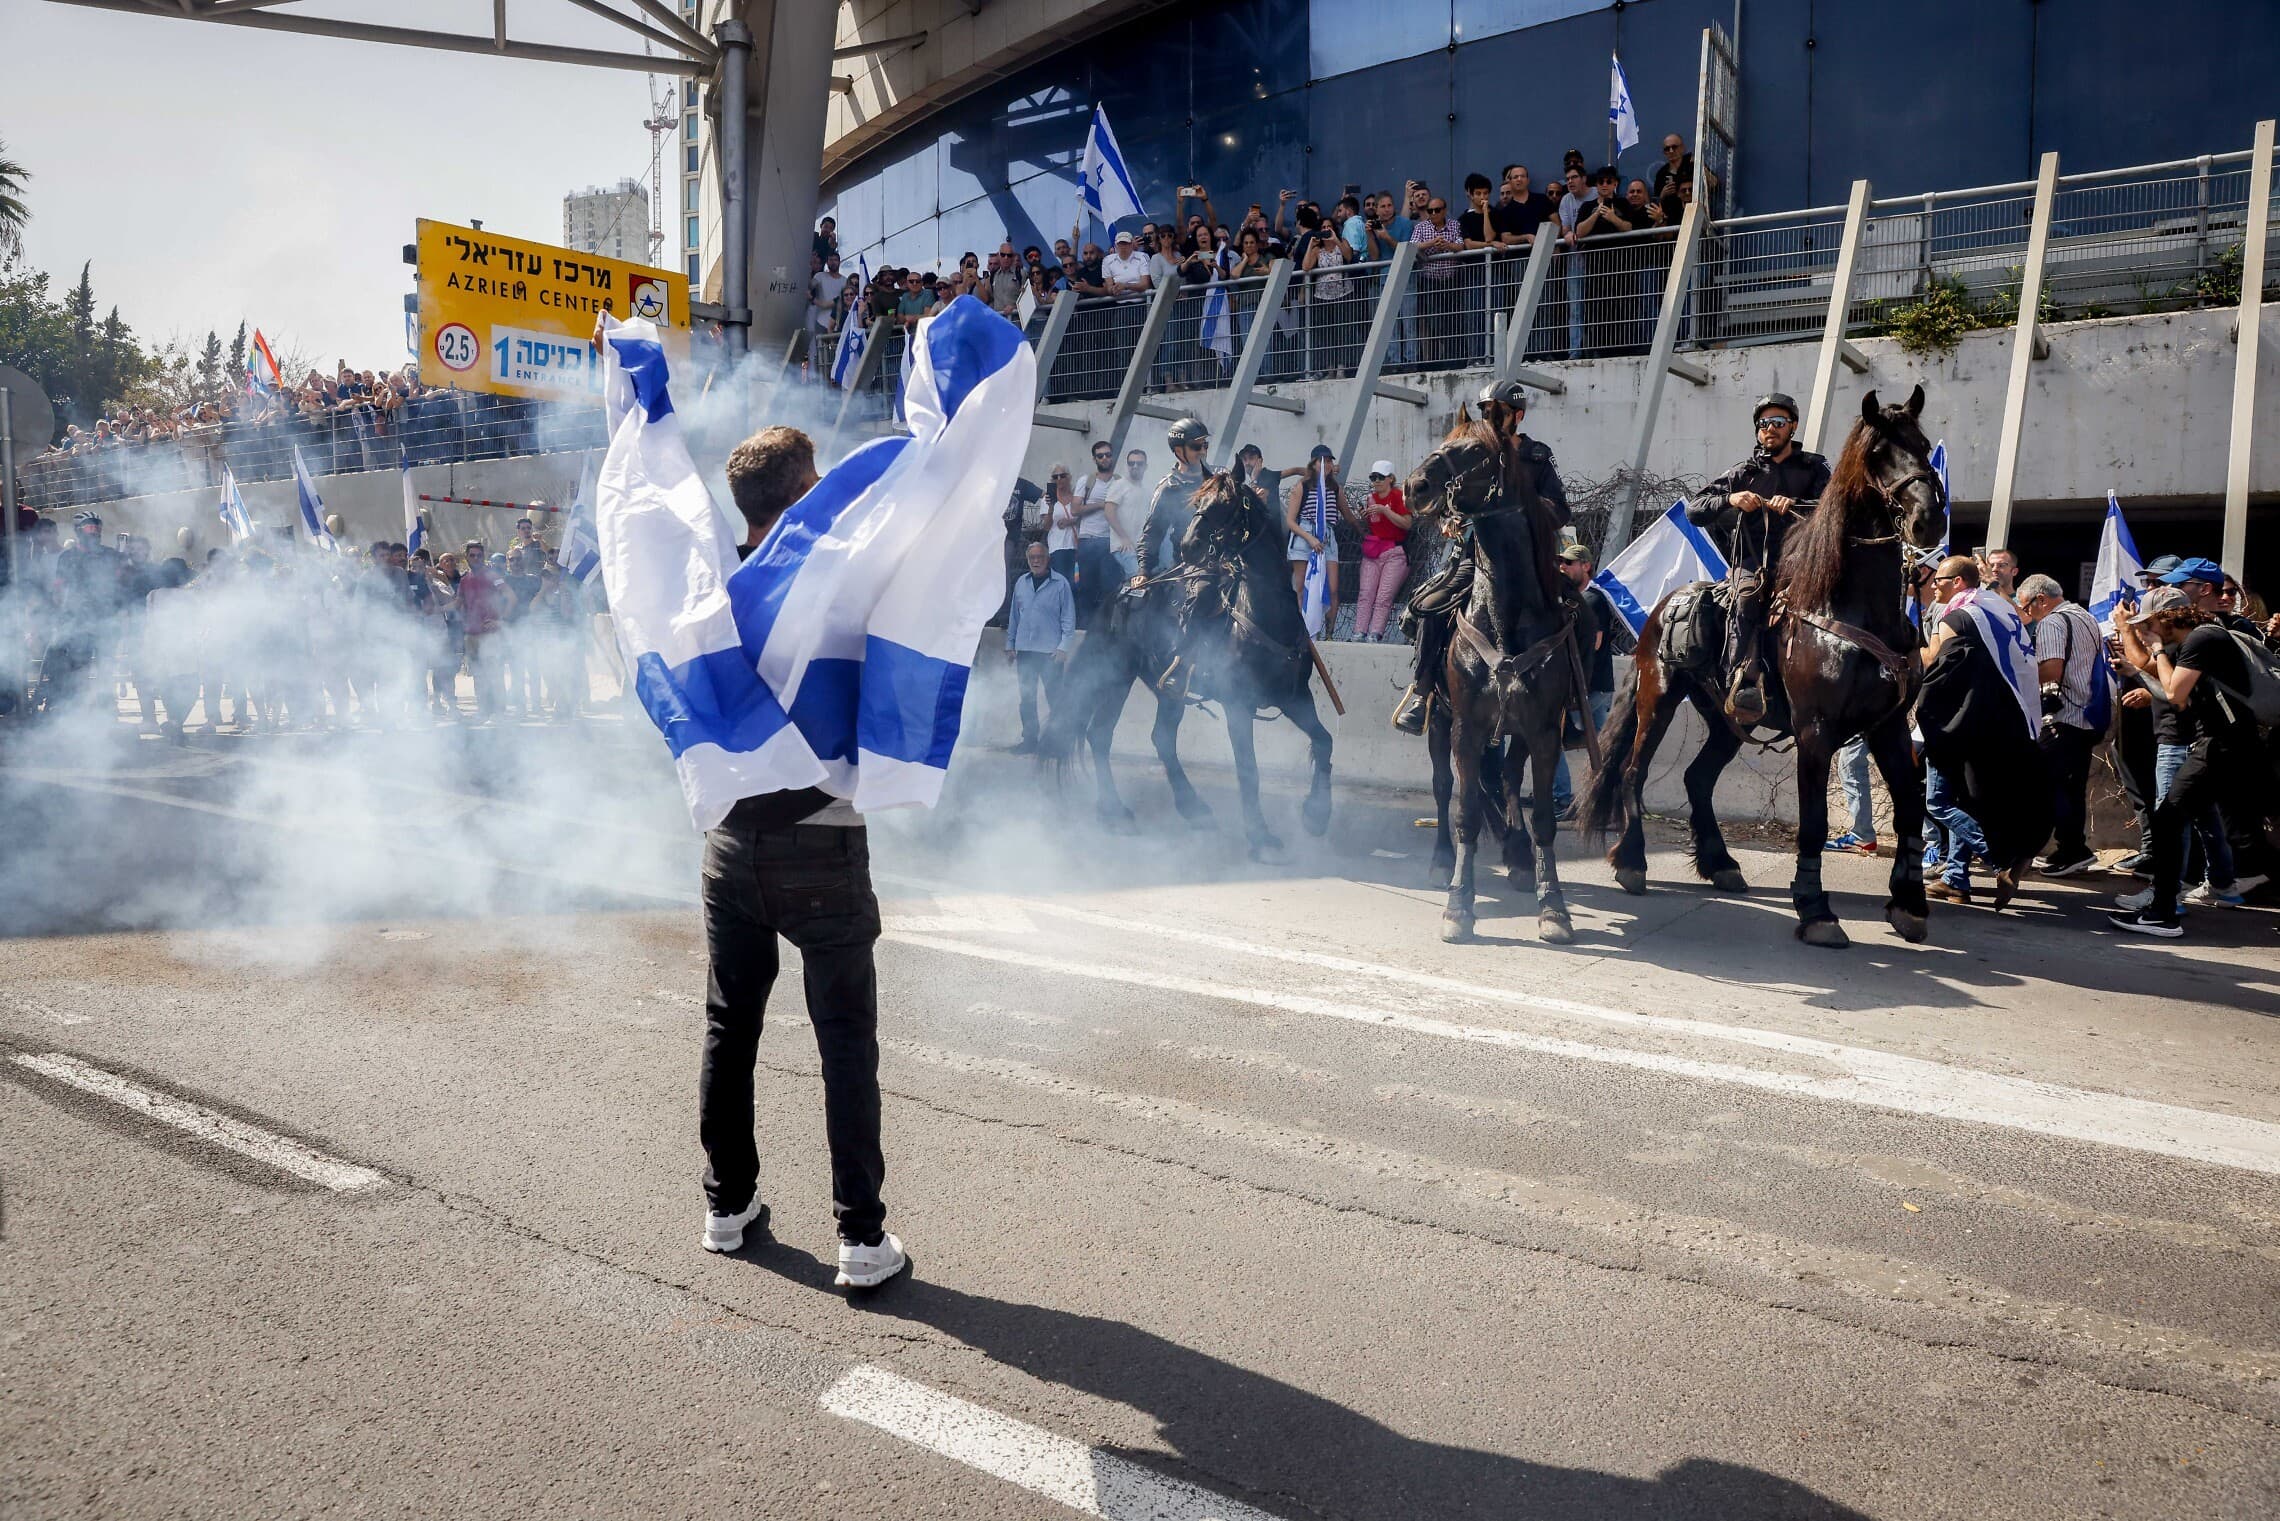 עשן מתמר בעקבות השלכת רימוני הלם בידי המשטרה על המפגינים במחלף השלום בתל אביב, 1 במרץ 2023 (צילום: אריק מרמור, פלאש 90)